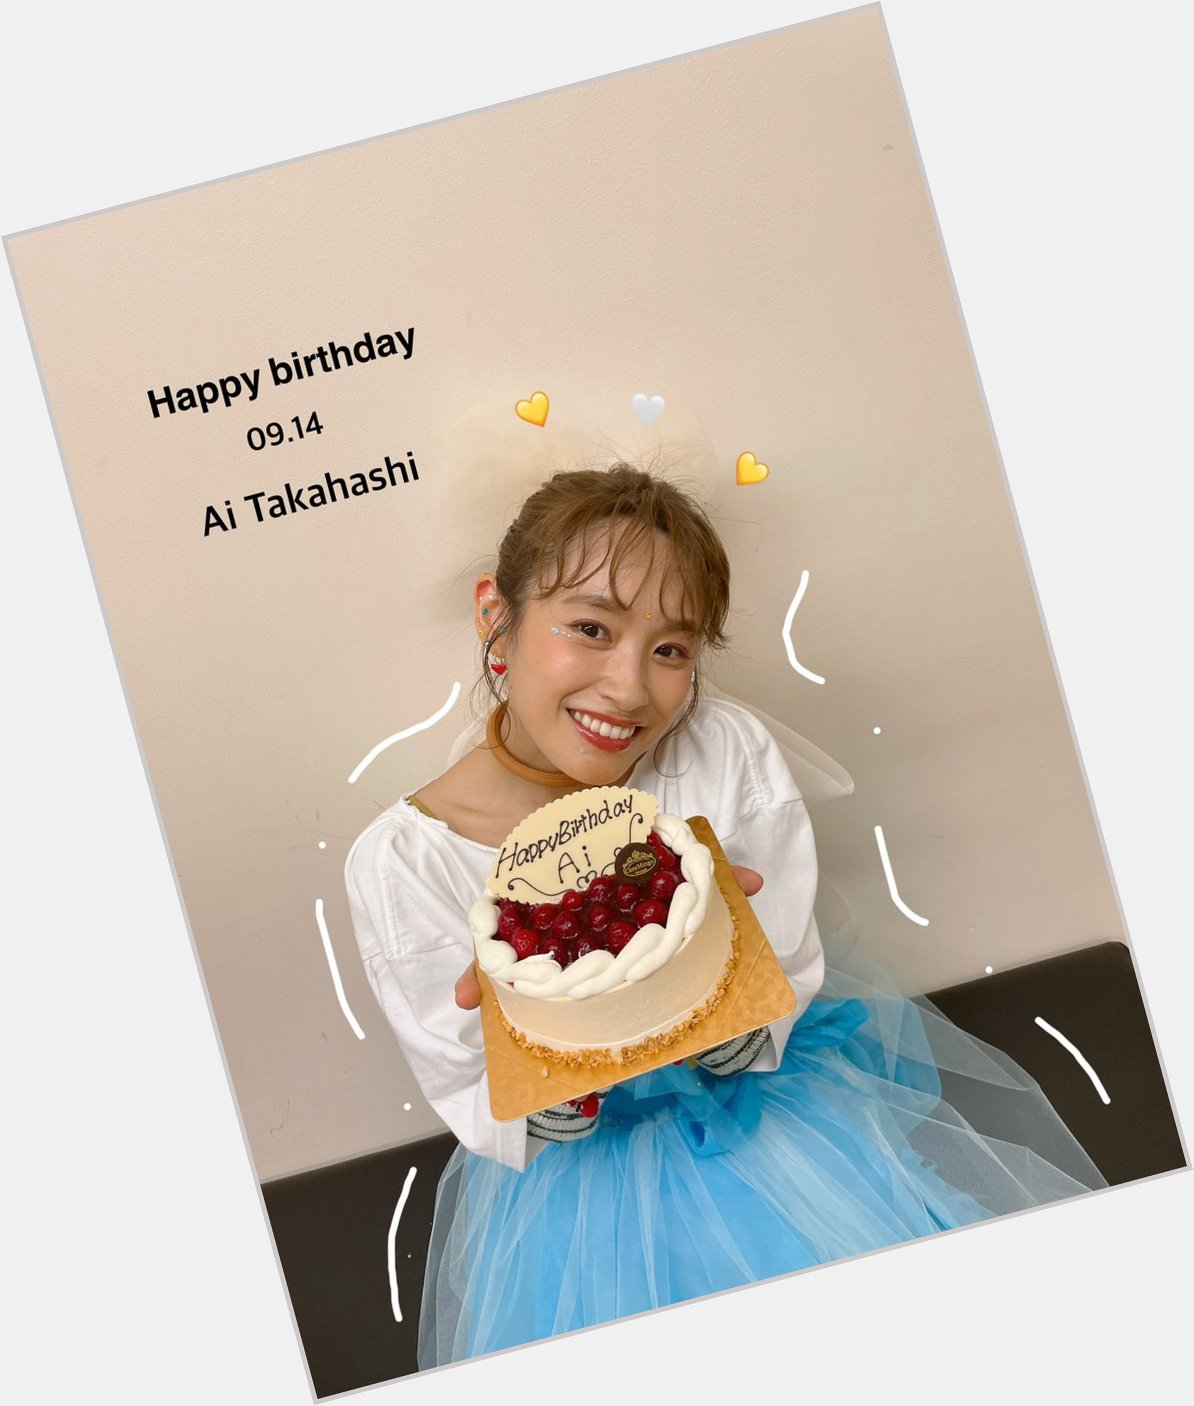 09.14
~Happy birthday \"Ai Takahashi\"~    